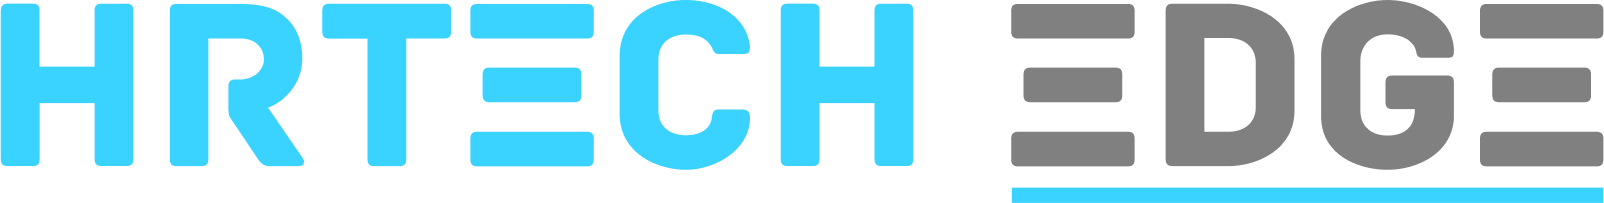 HRTech Edge Logo